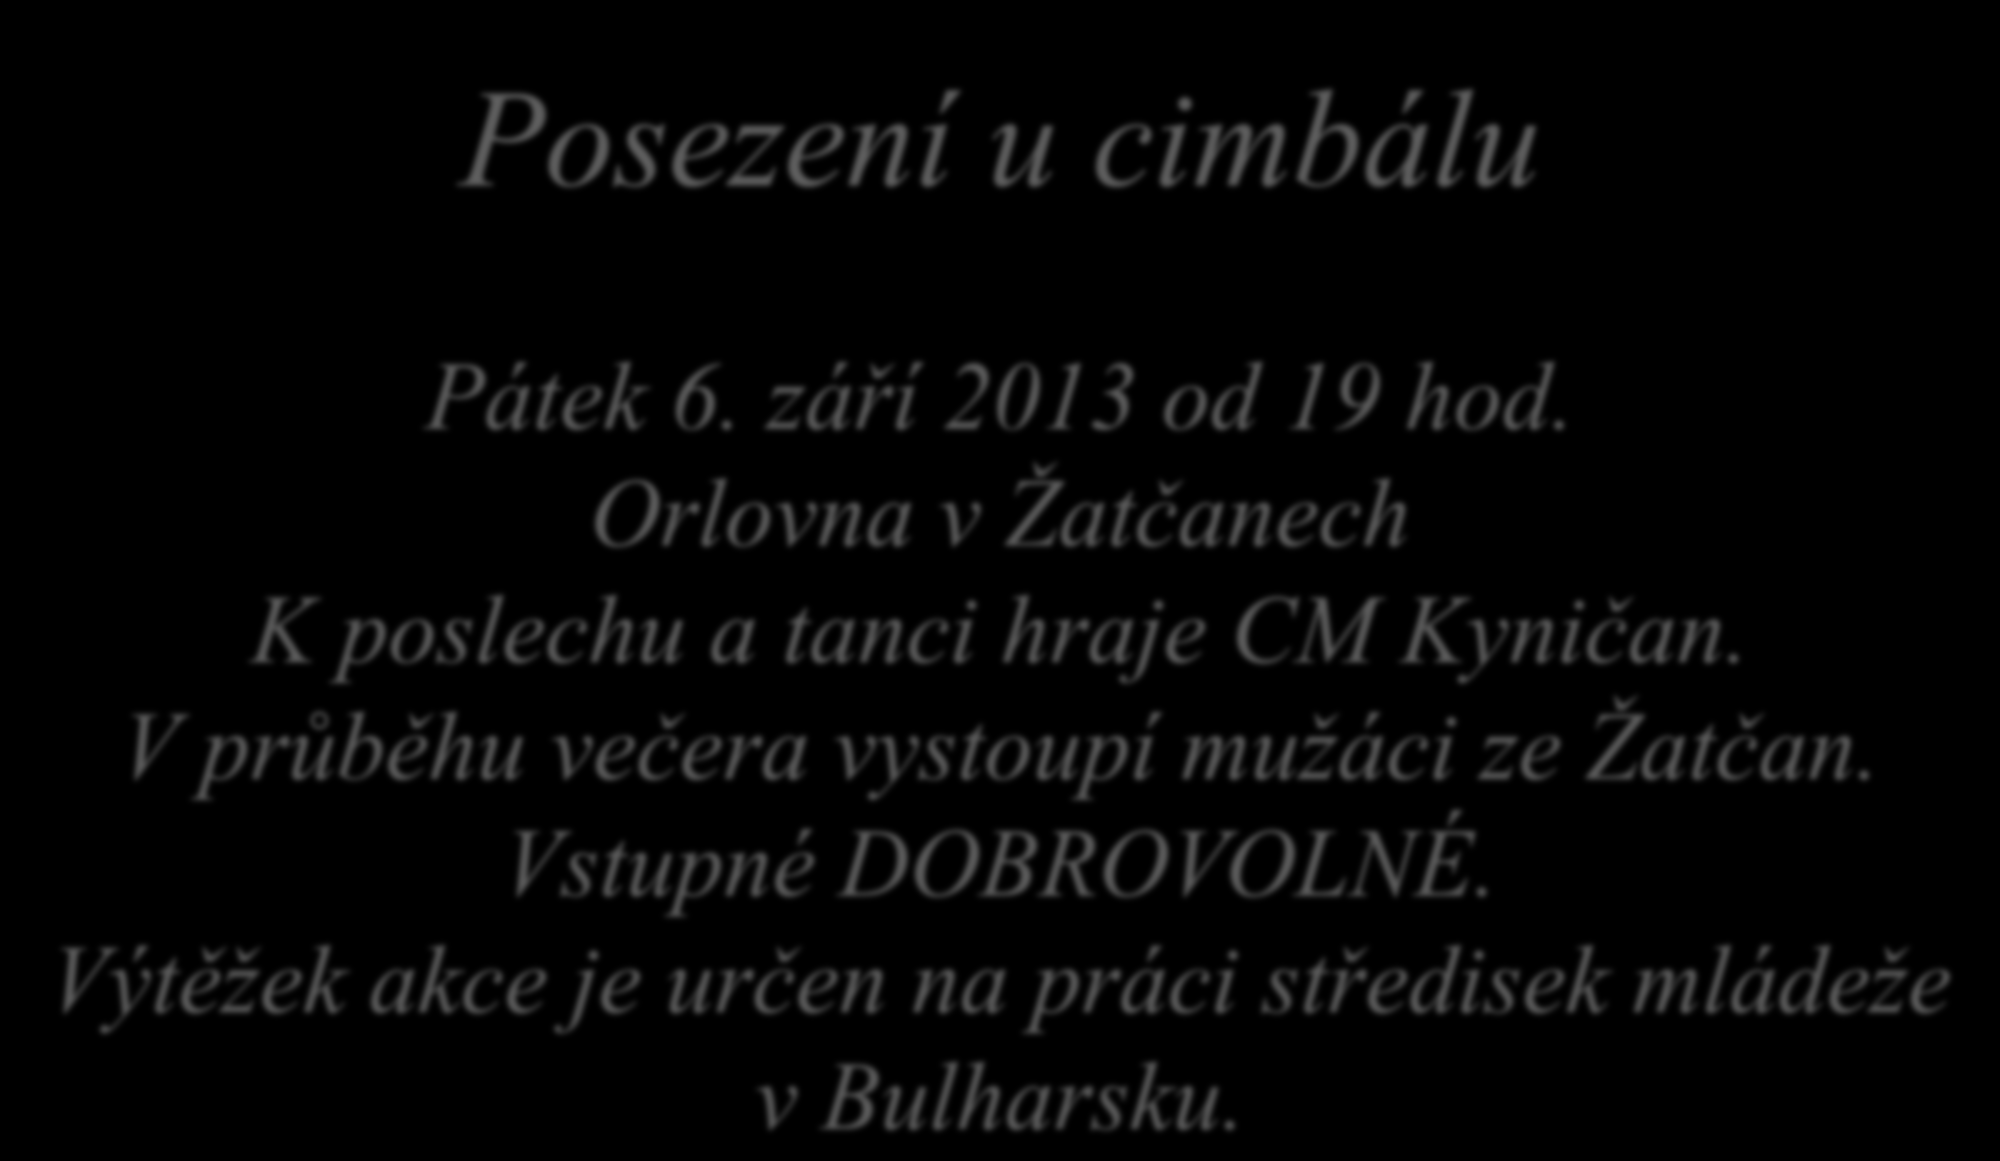 Posezení u cimbálu Pátek 6. září 2013 od 19 hod. Orlovna v Žatčanech K poslechu a tanci hraje CM Kyničan.